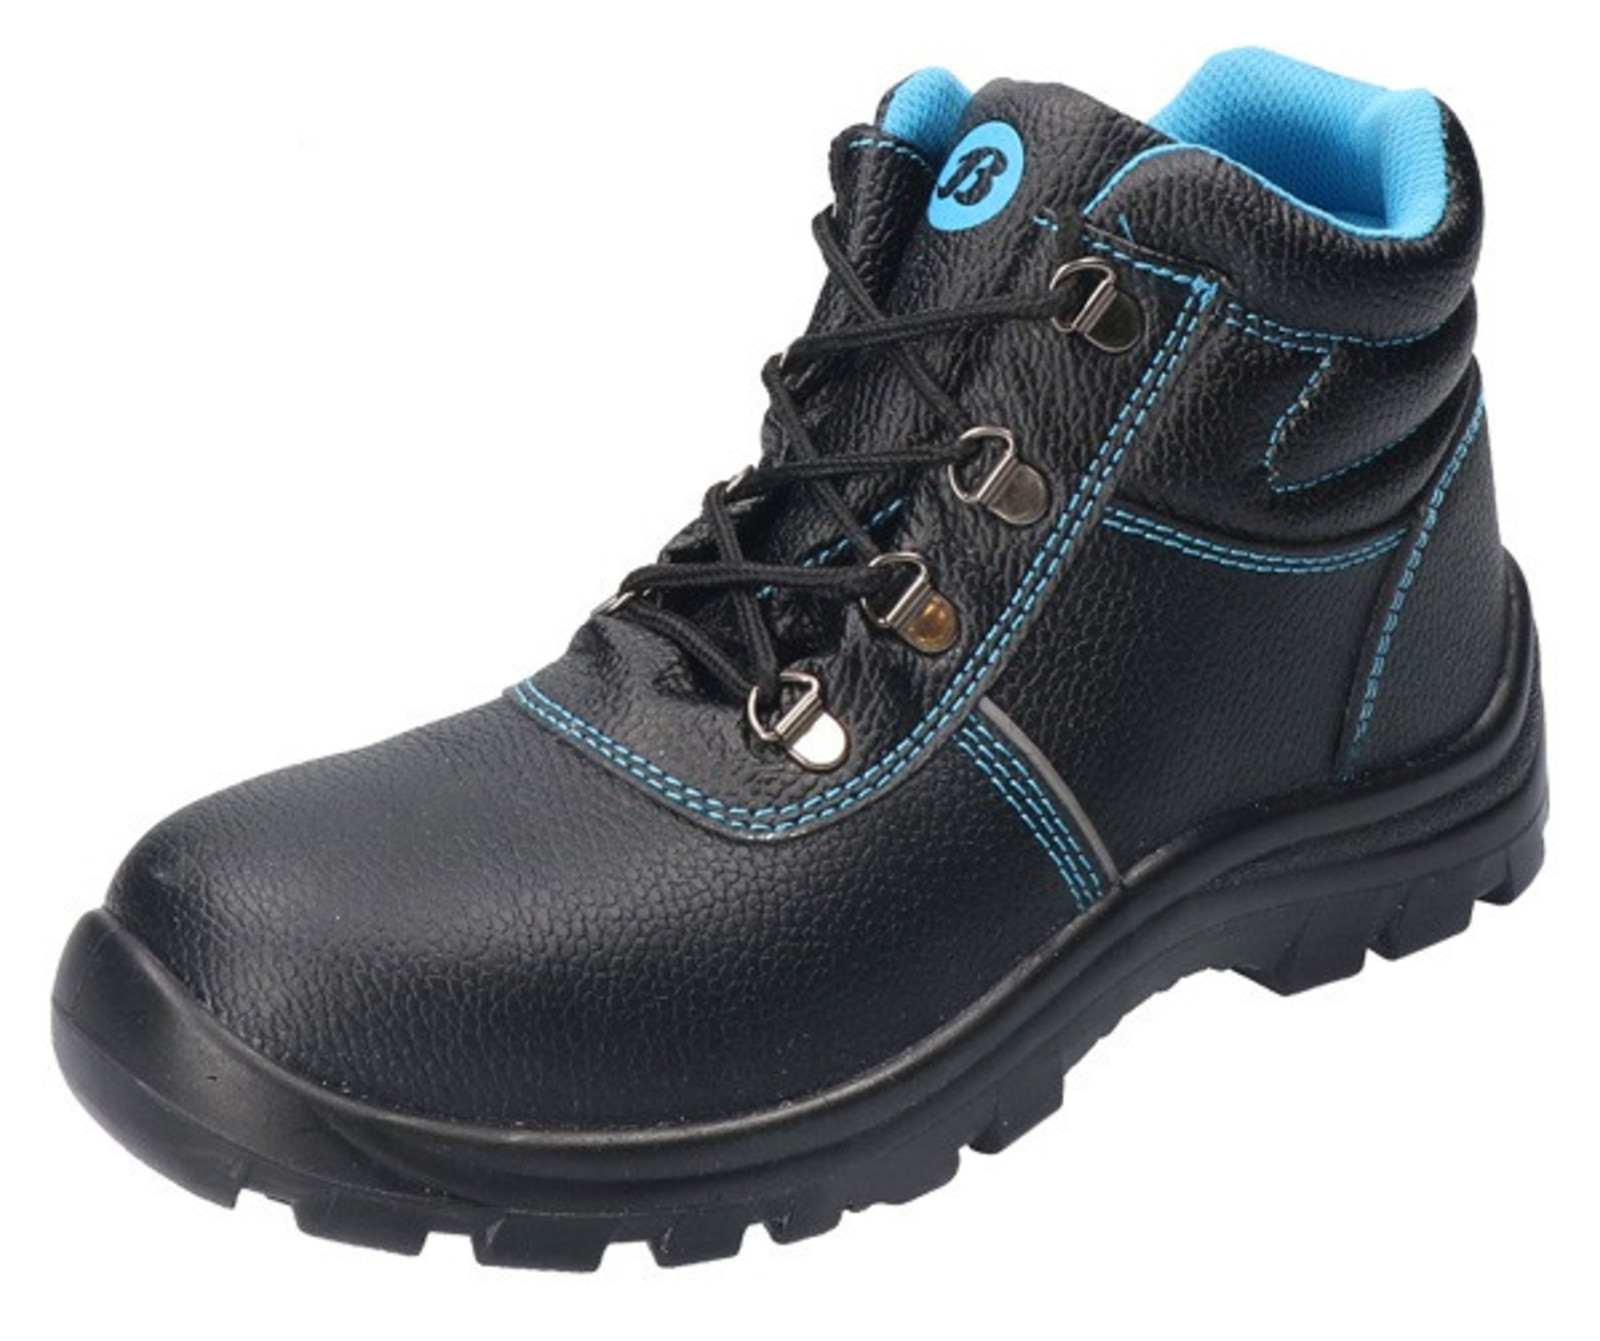 Bezpečnostná obuv Baťa Sirocco S3 - veľkosť: 45, farba: čierna